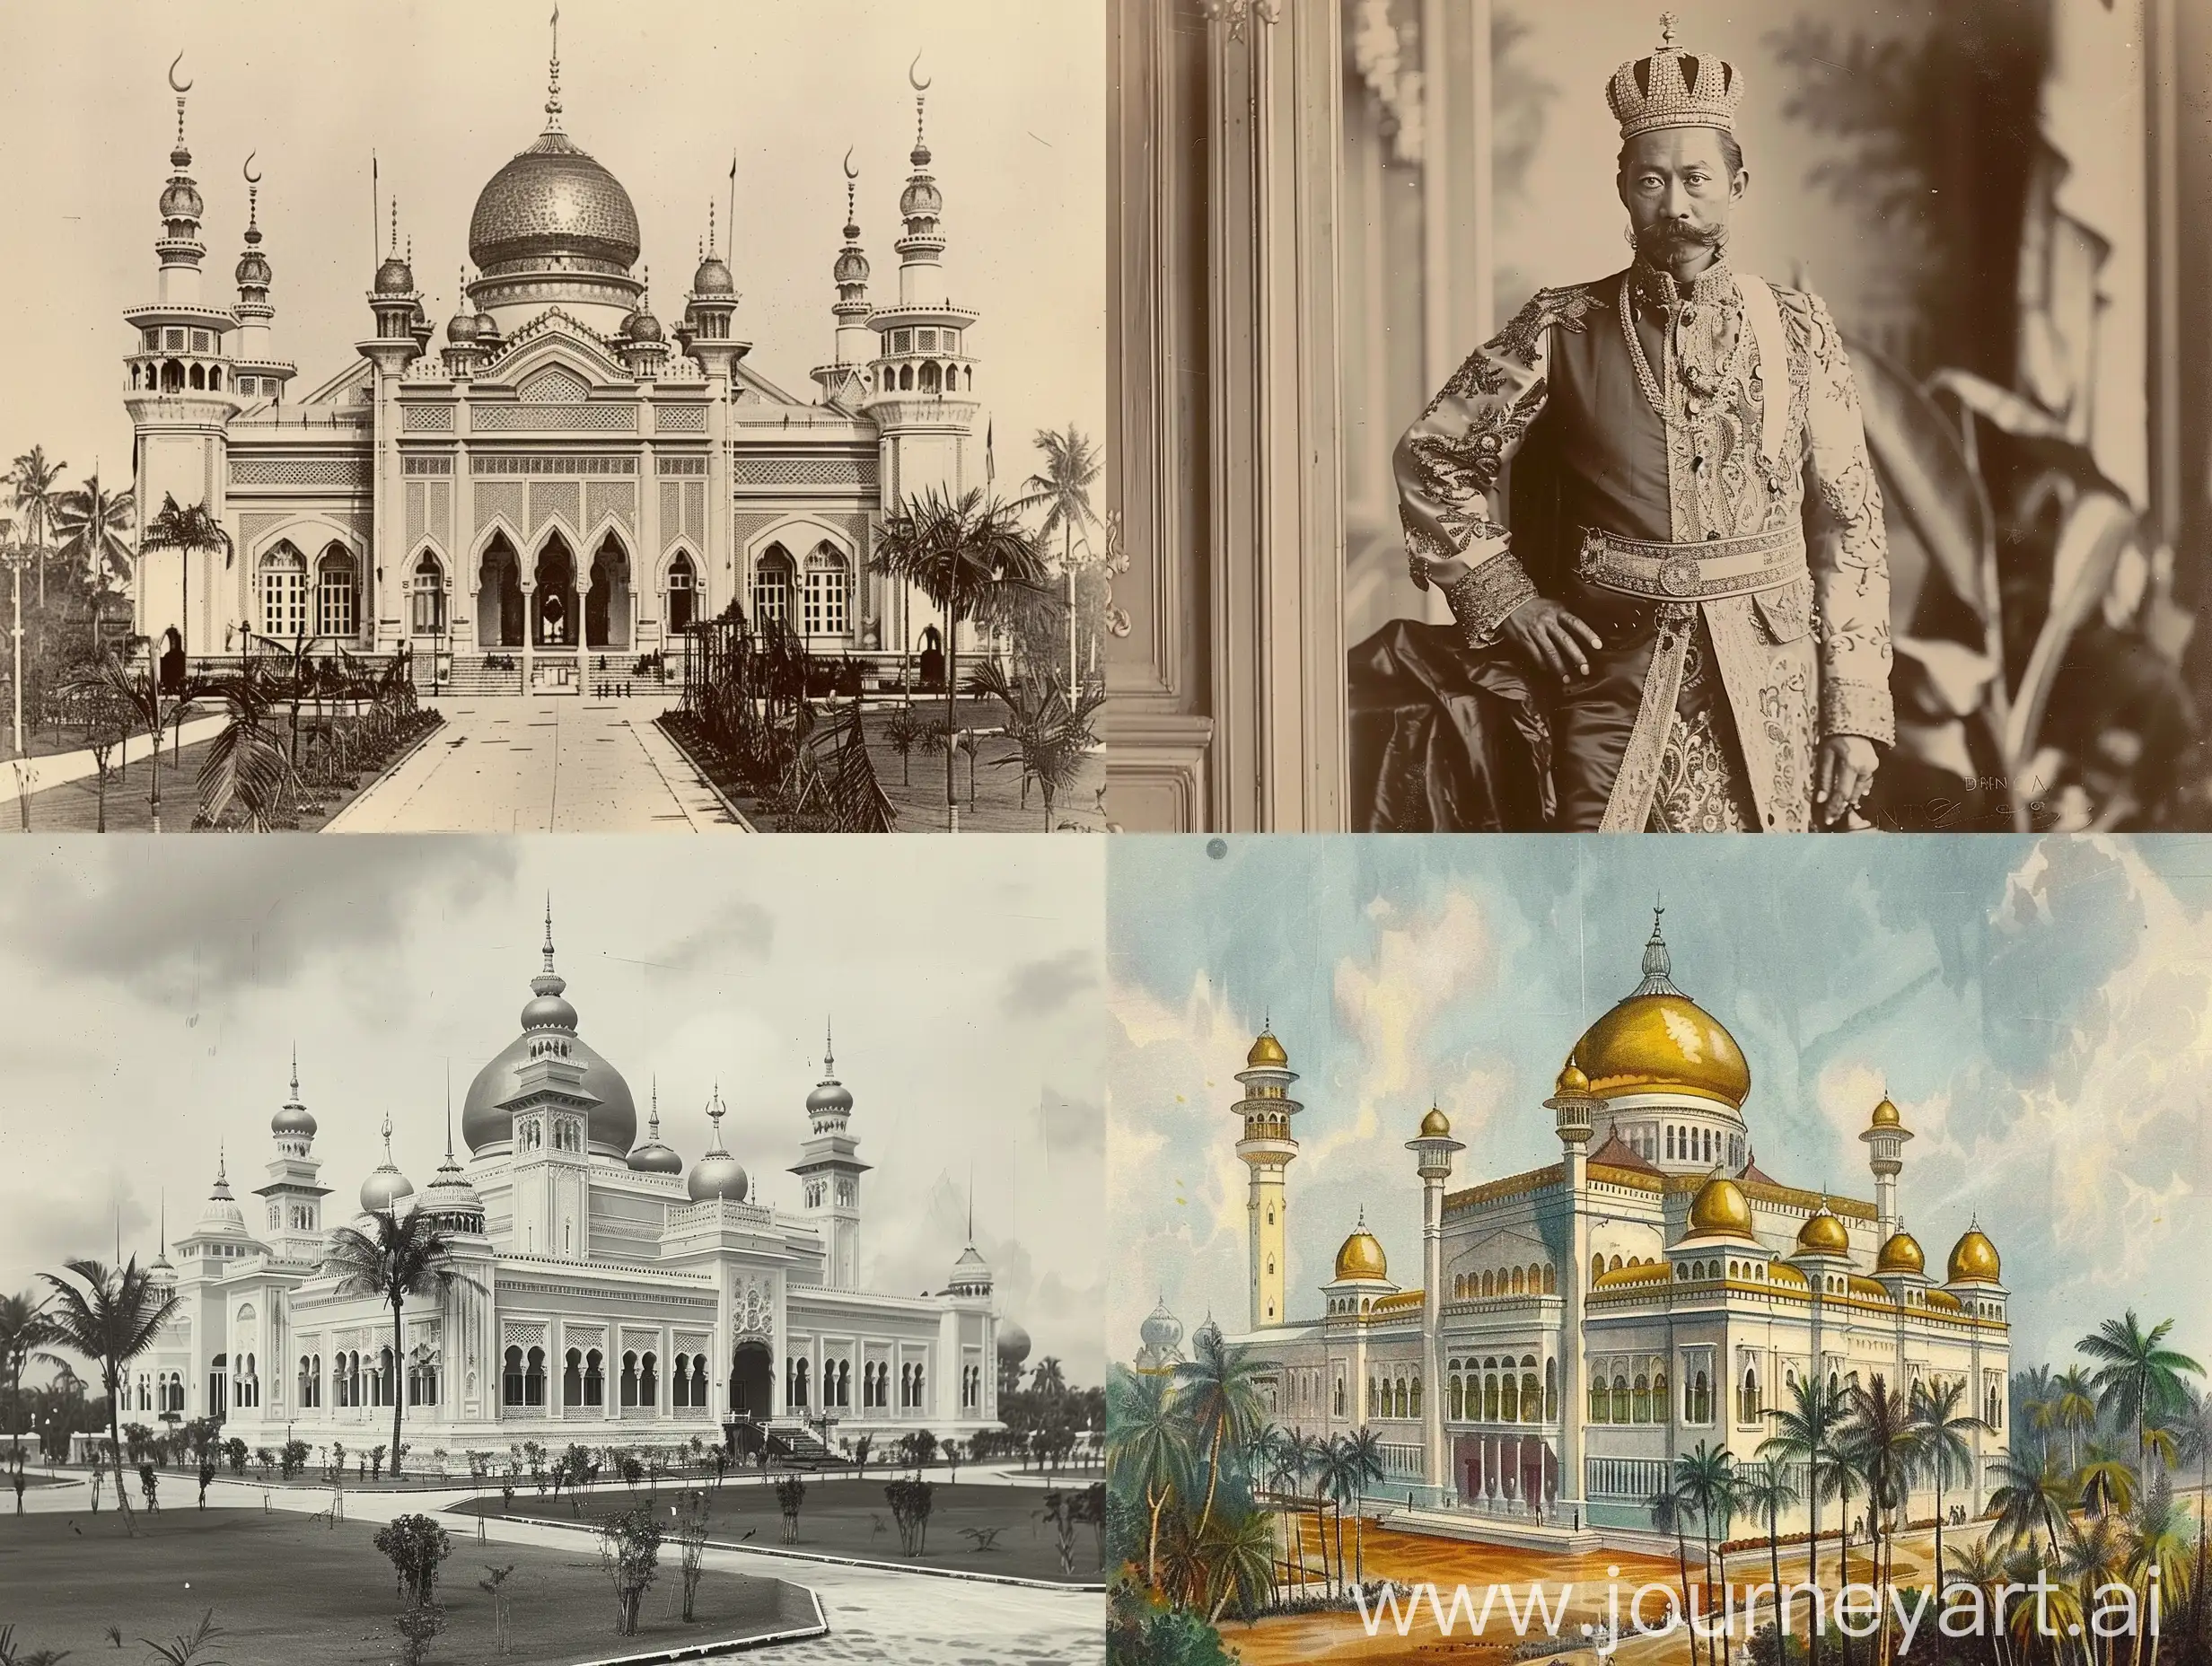 Brunei Darussalam was monarchy in Victorian Era